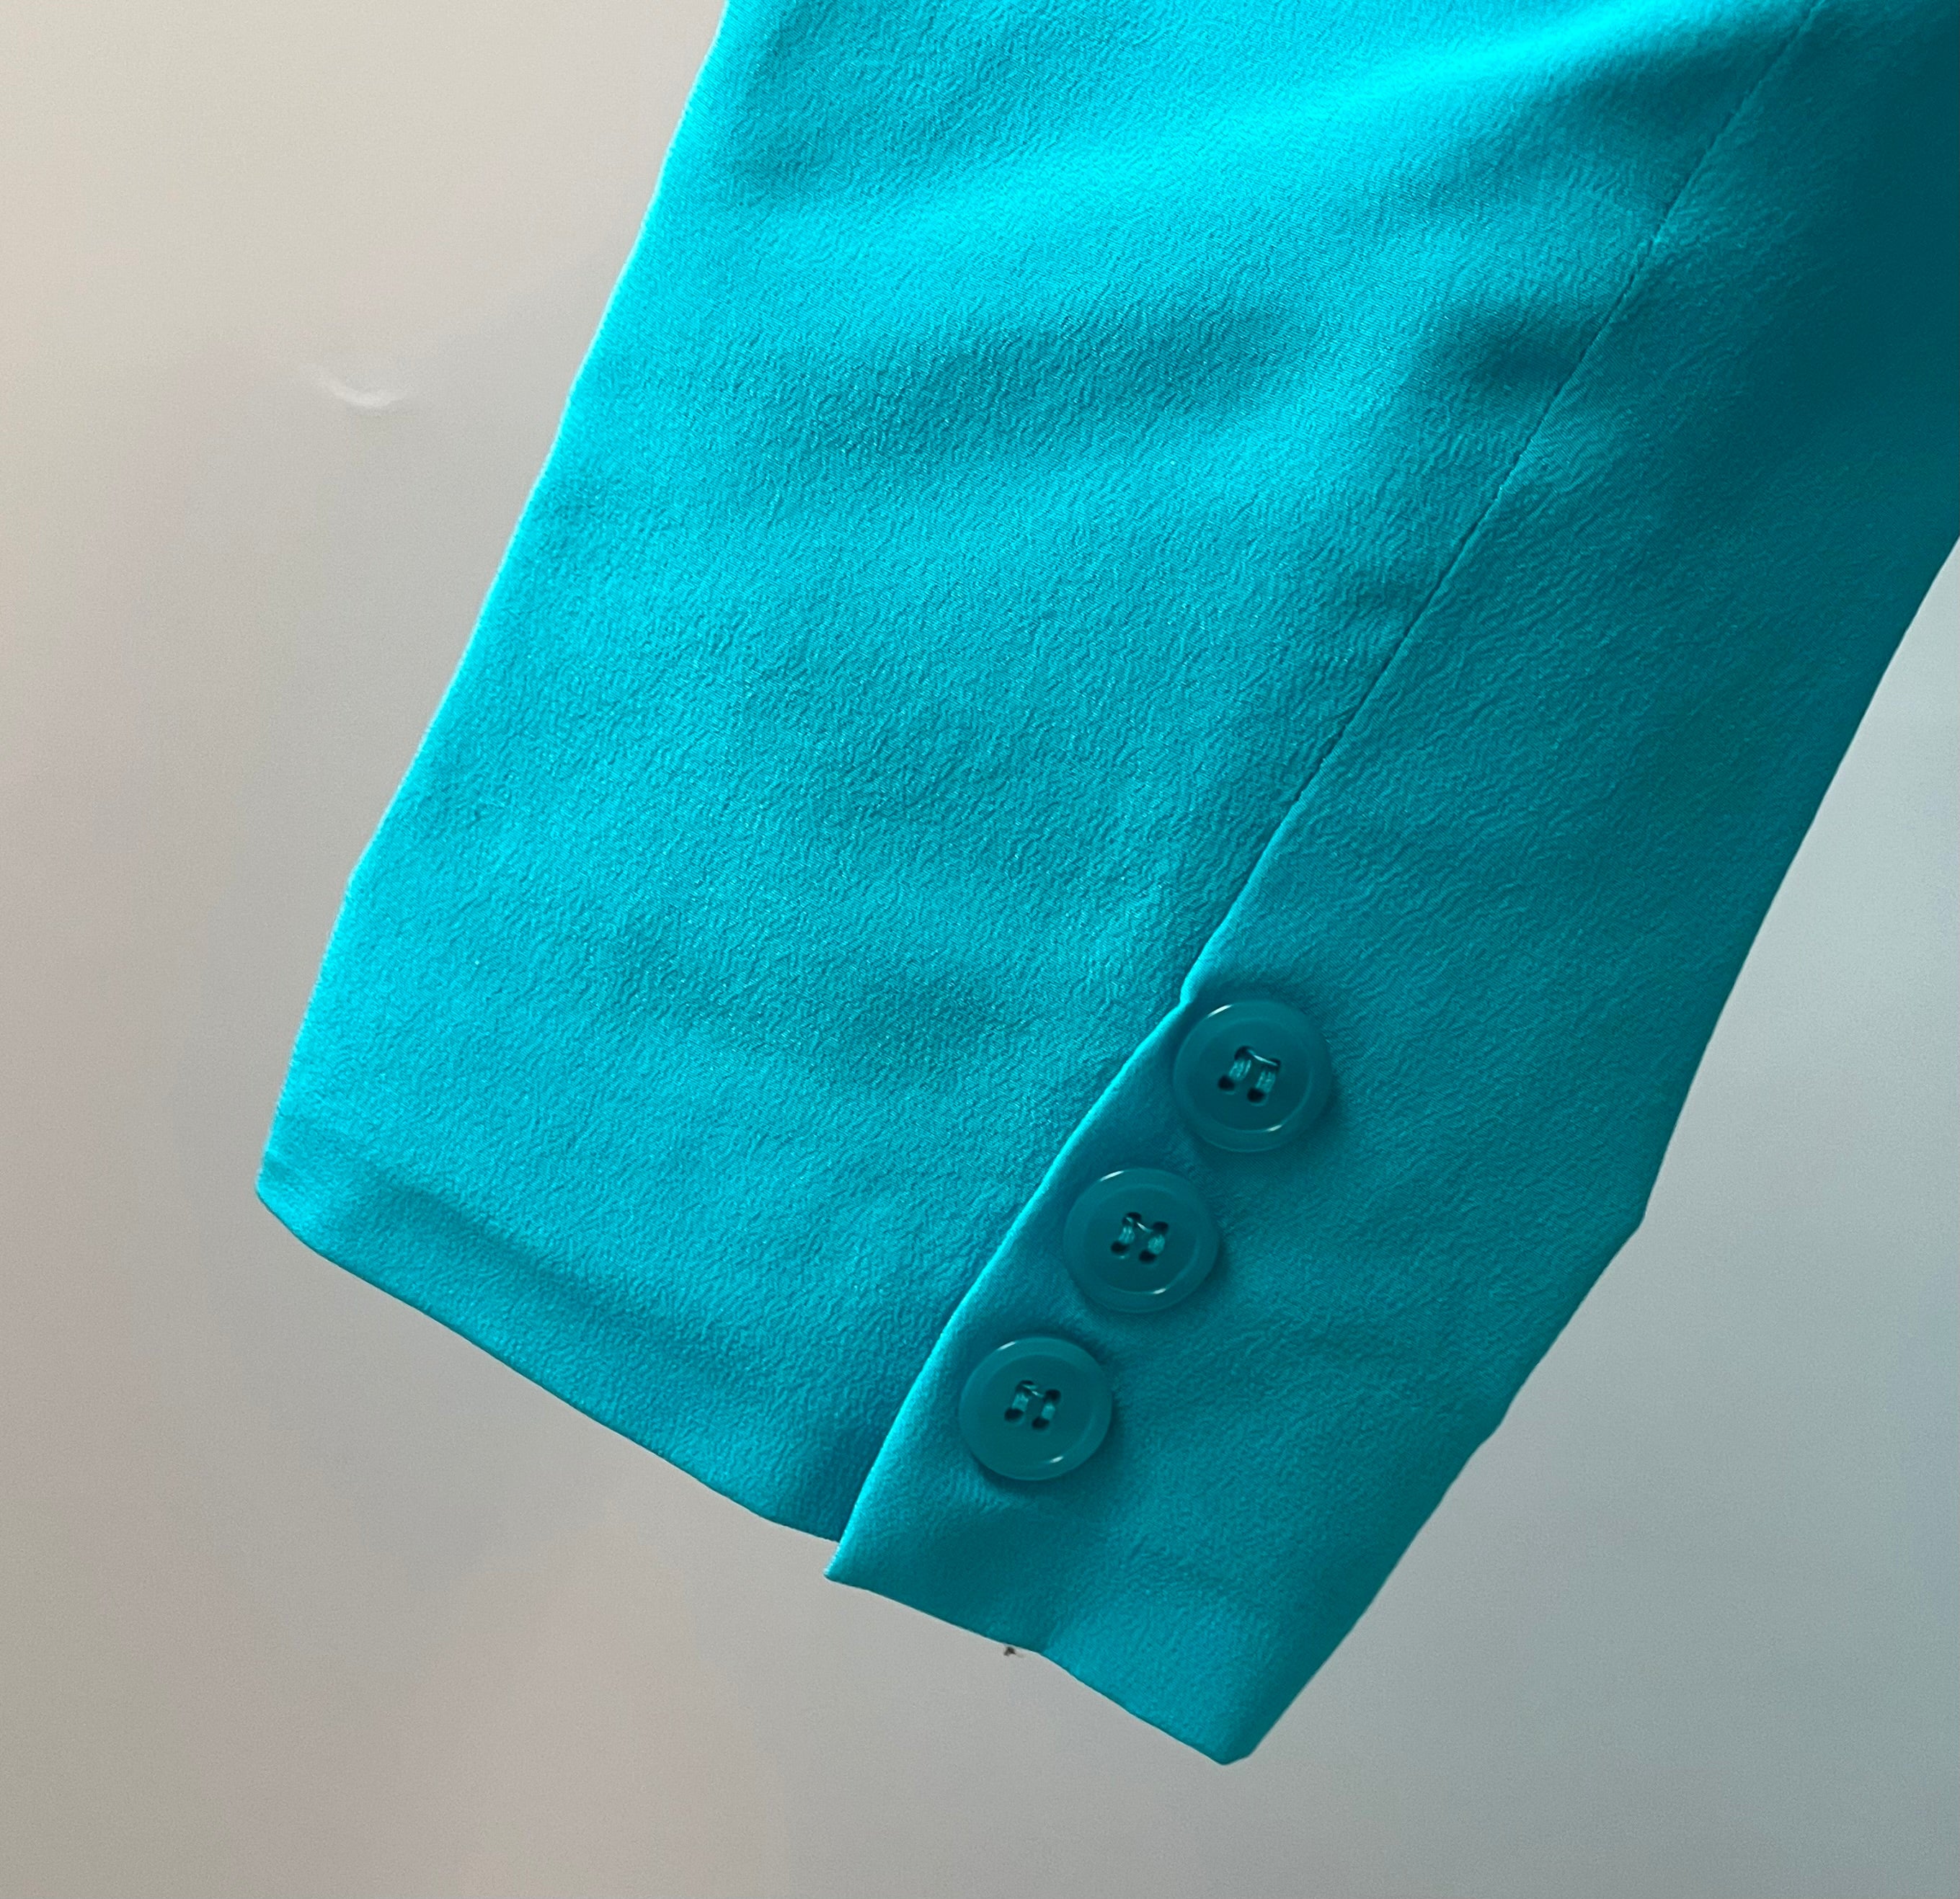 1980s Savannah Turquoise Silk Jacket, Size: S/M